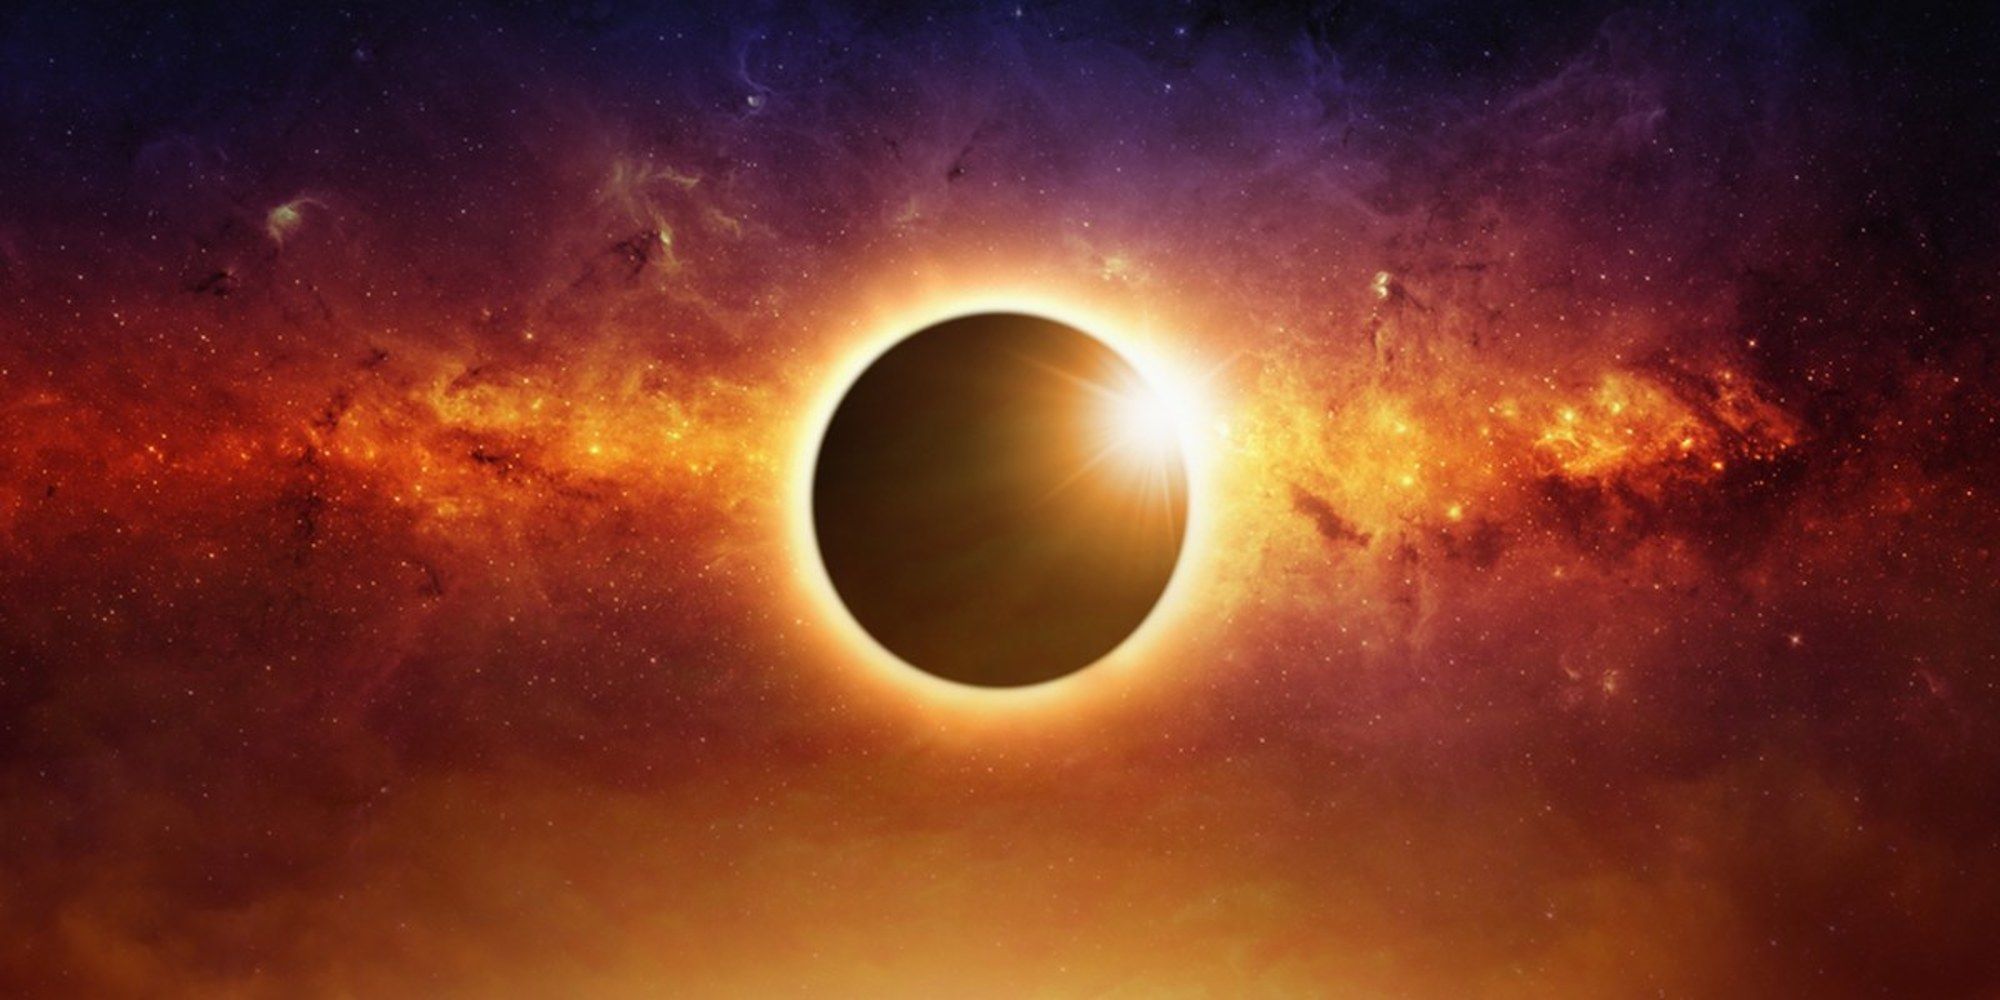 Résultat de recherche d'images pour "éclipse"